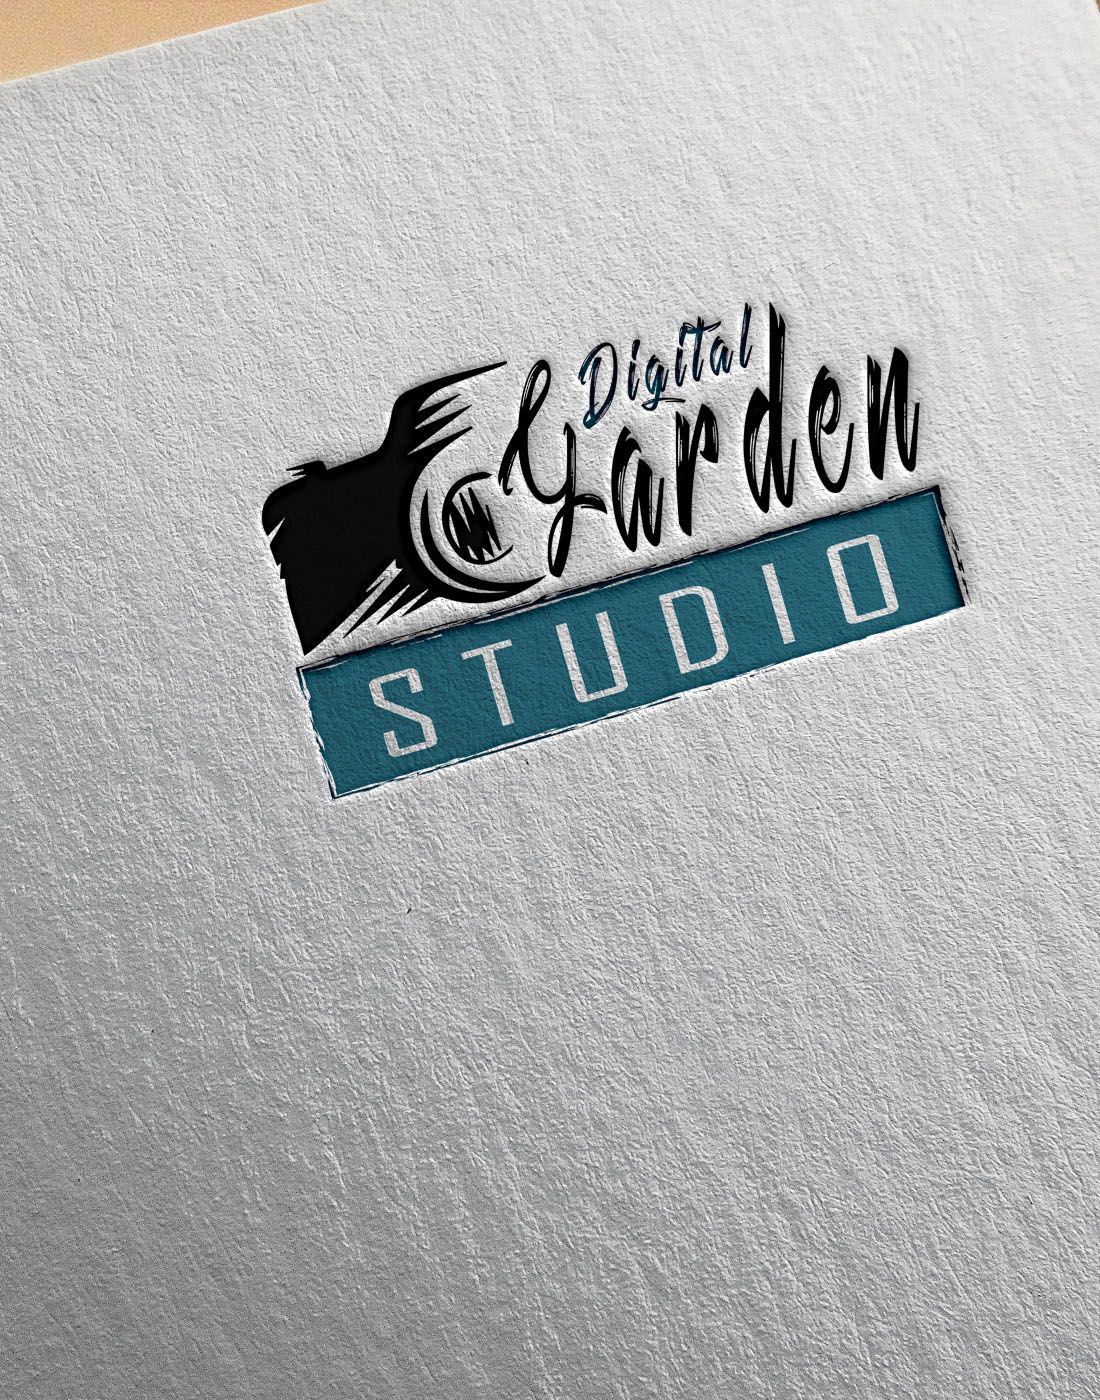 studio logo ideas 4